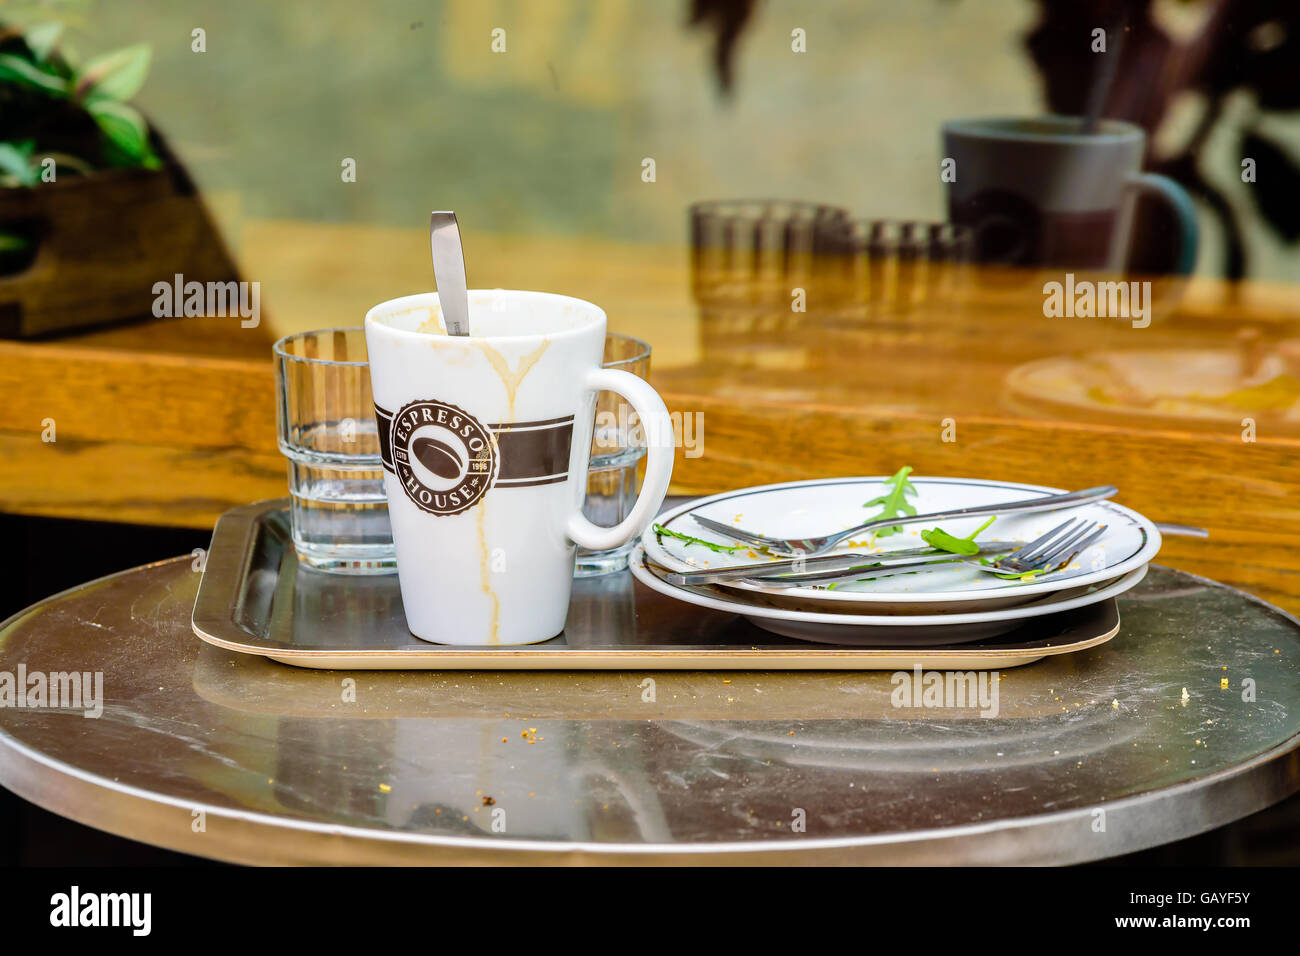 Motala, Schweden - 21. Juni 2016: Schmutziges Geschirr auf kleinen schmutzigen Tisch im Café im Freien. Realen Lebenssituation. Stockfoto